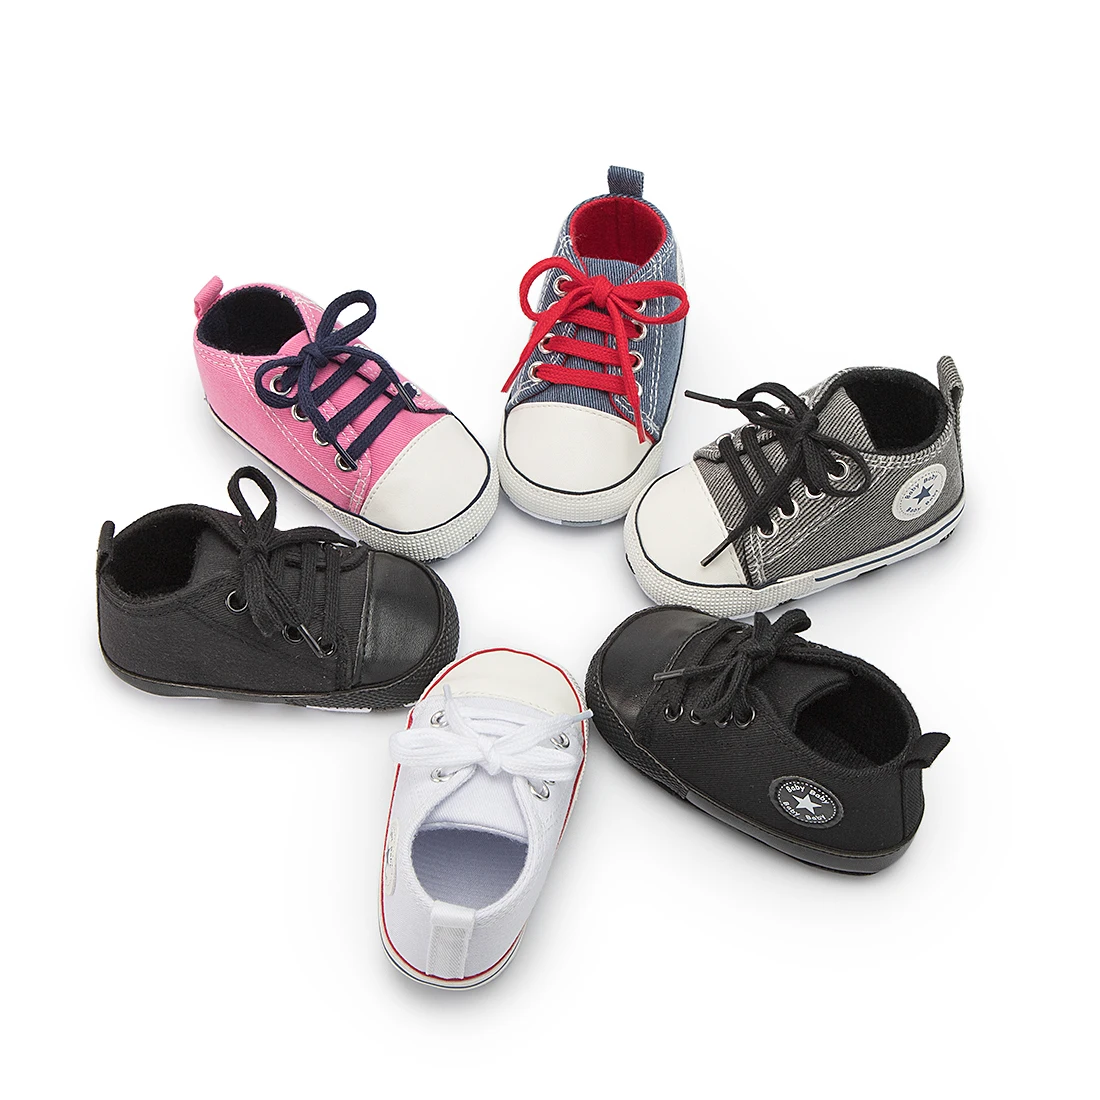 MOQ 1 New fashion Classic Canvas Denim Cotton Soft sole prewalker toddler boy babe shoes, 6 colors